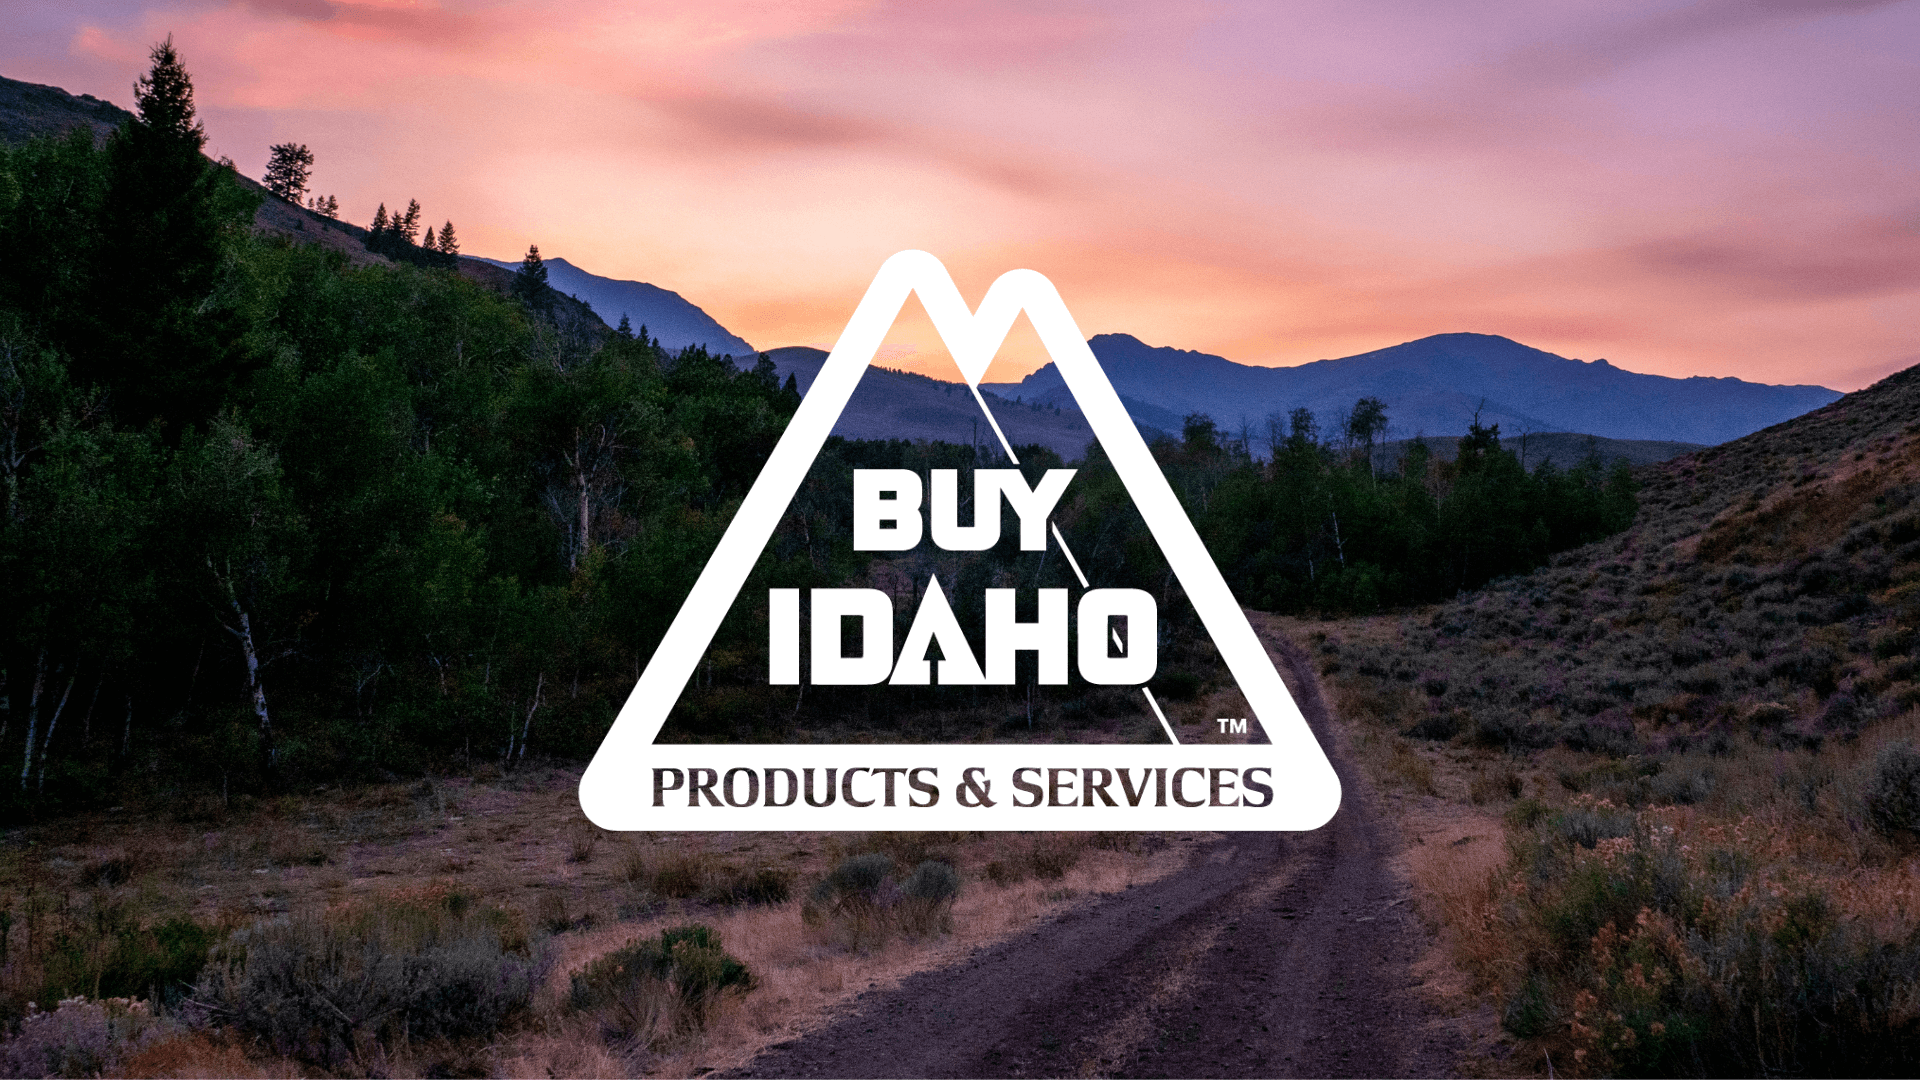 Idaho Landscape with Buy Idaho logo white